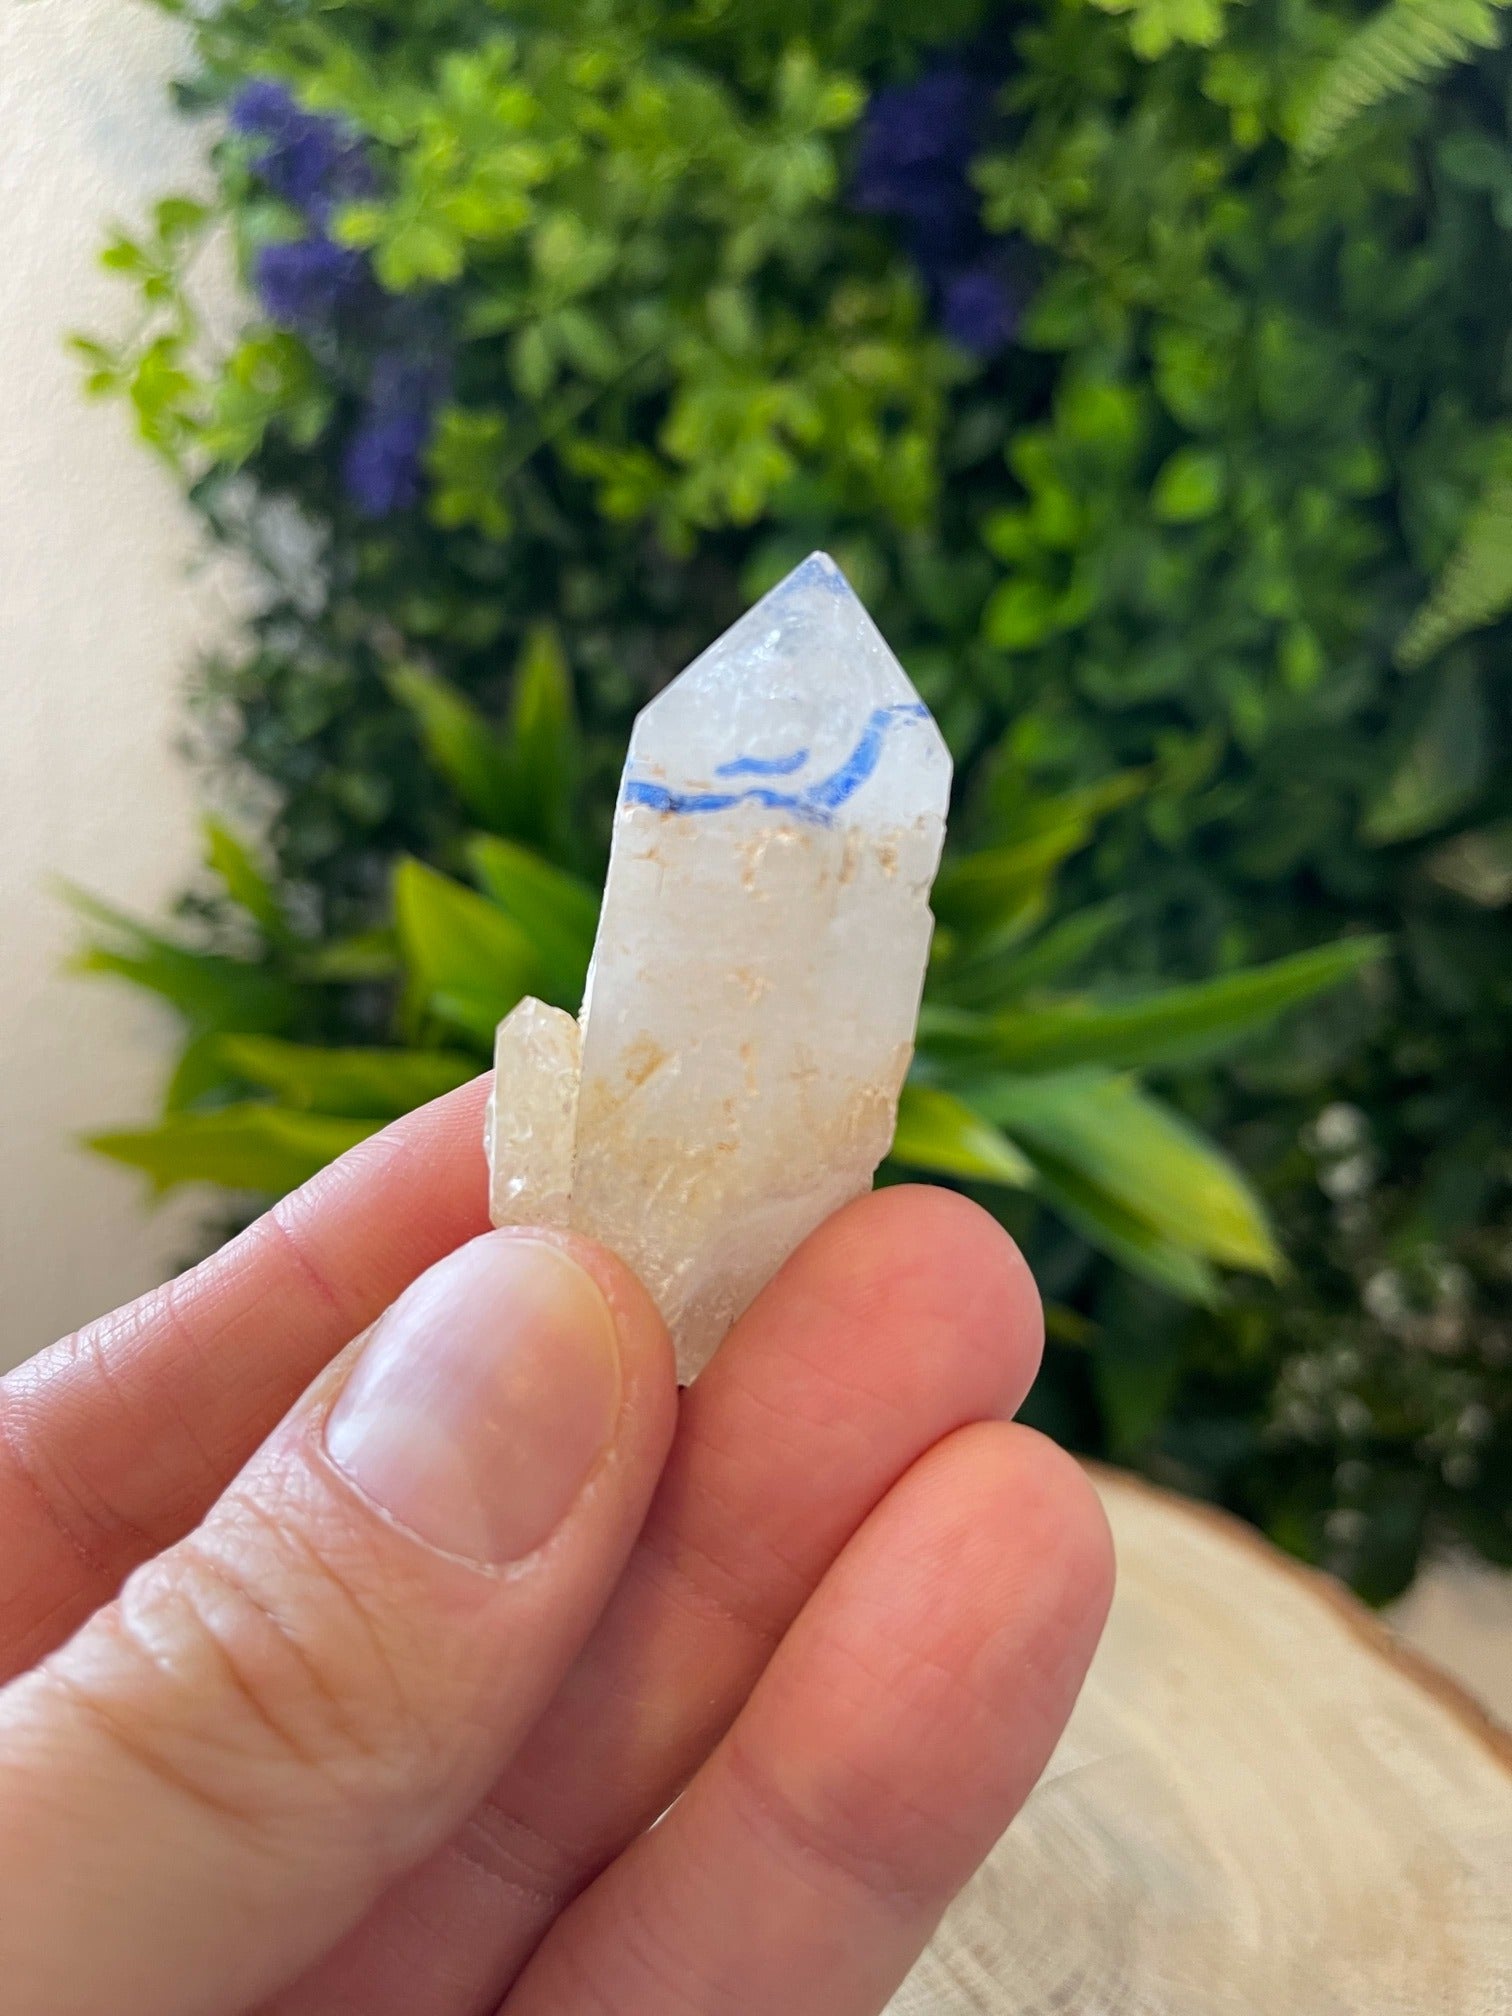 Bergkristall mit Wassereinschluss (Rarität!)